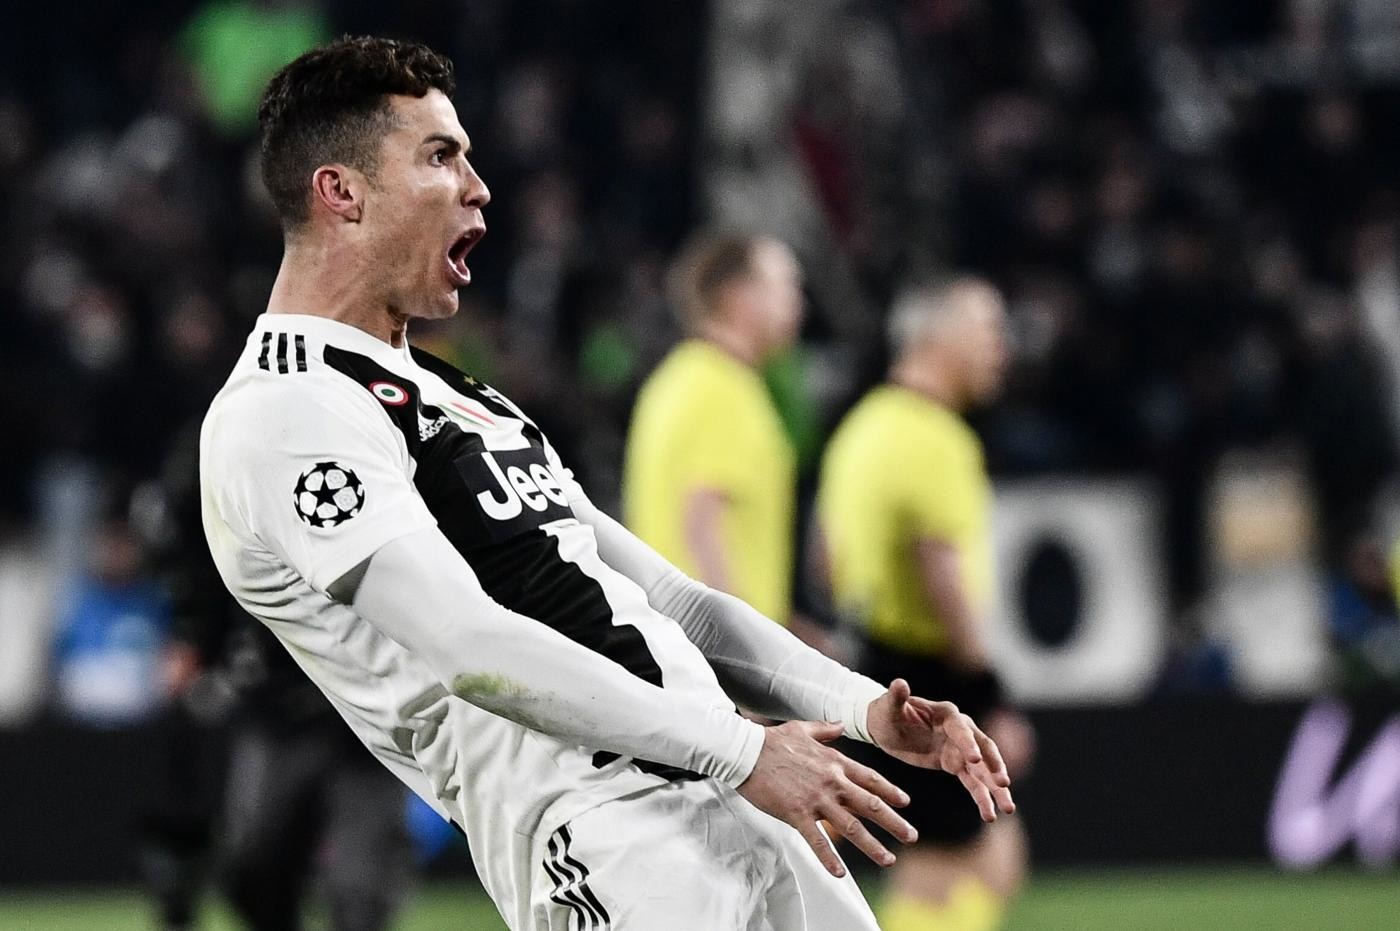 L’Atletico pensa a un reclamo contro l’esultanza di Ronaldo